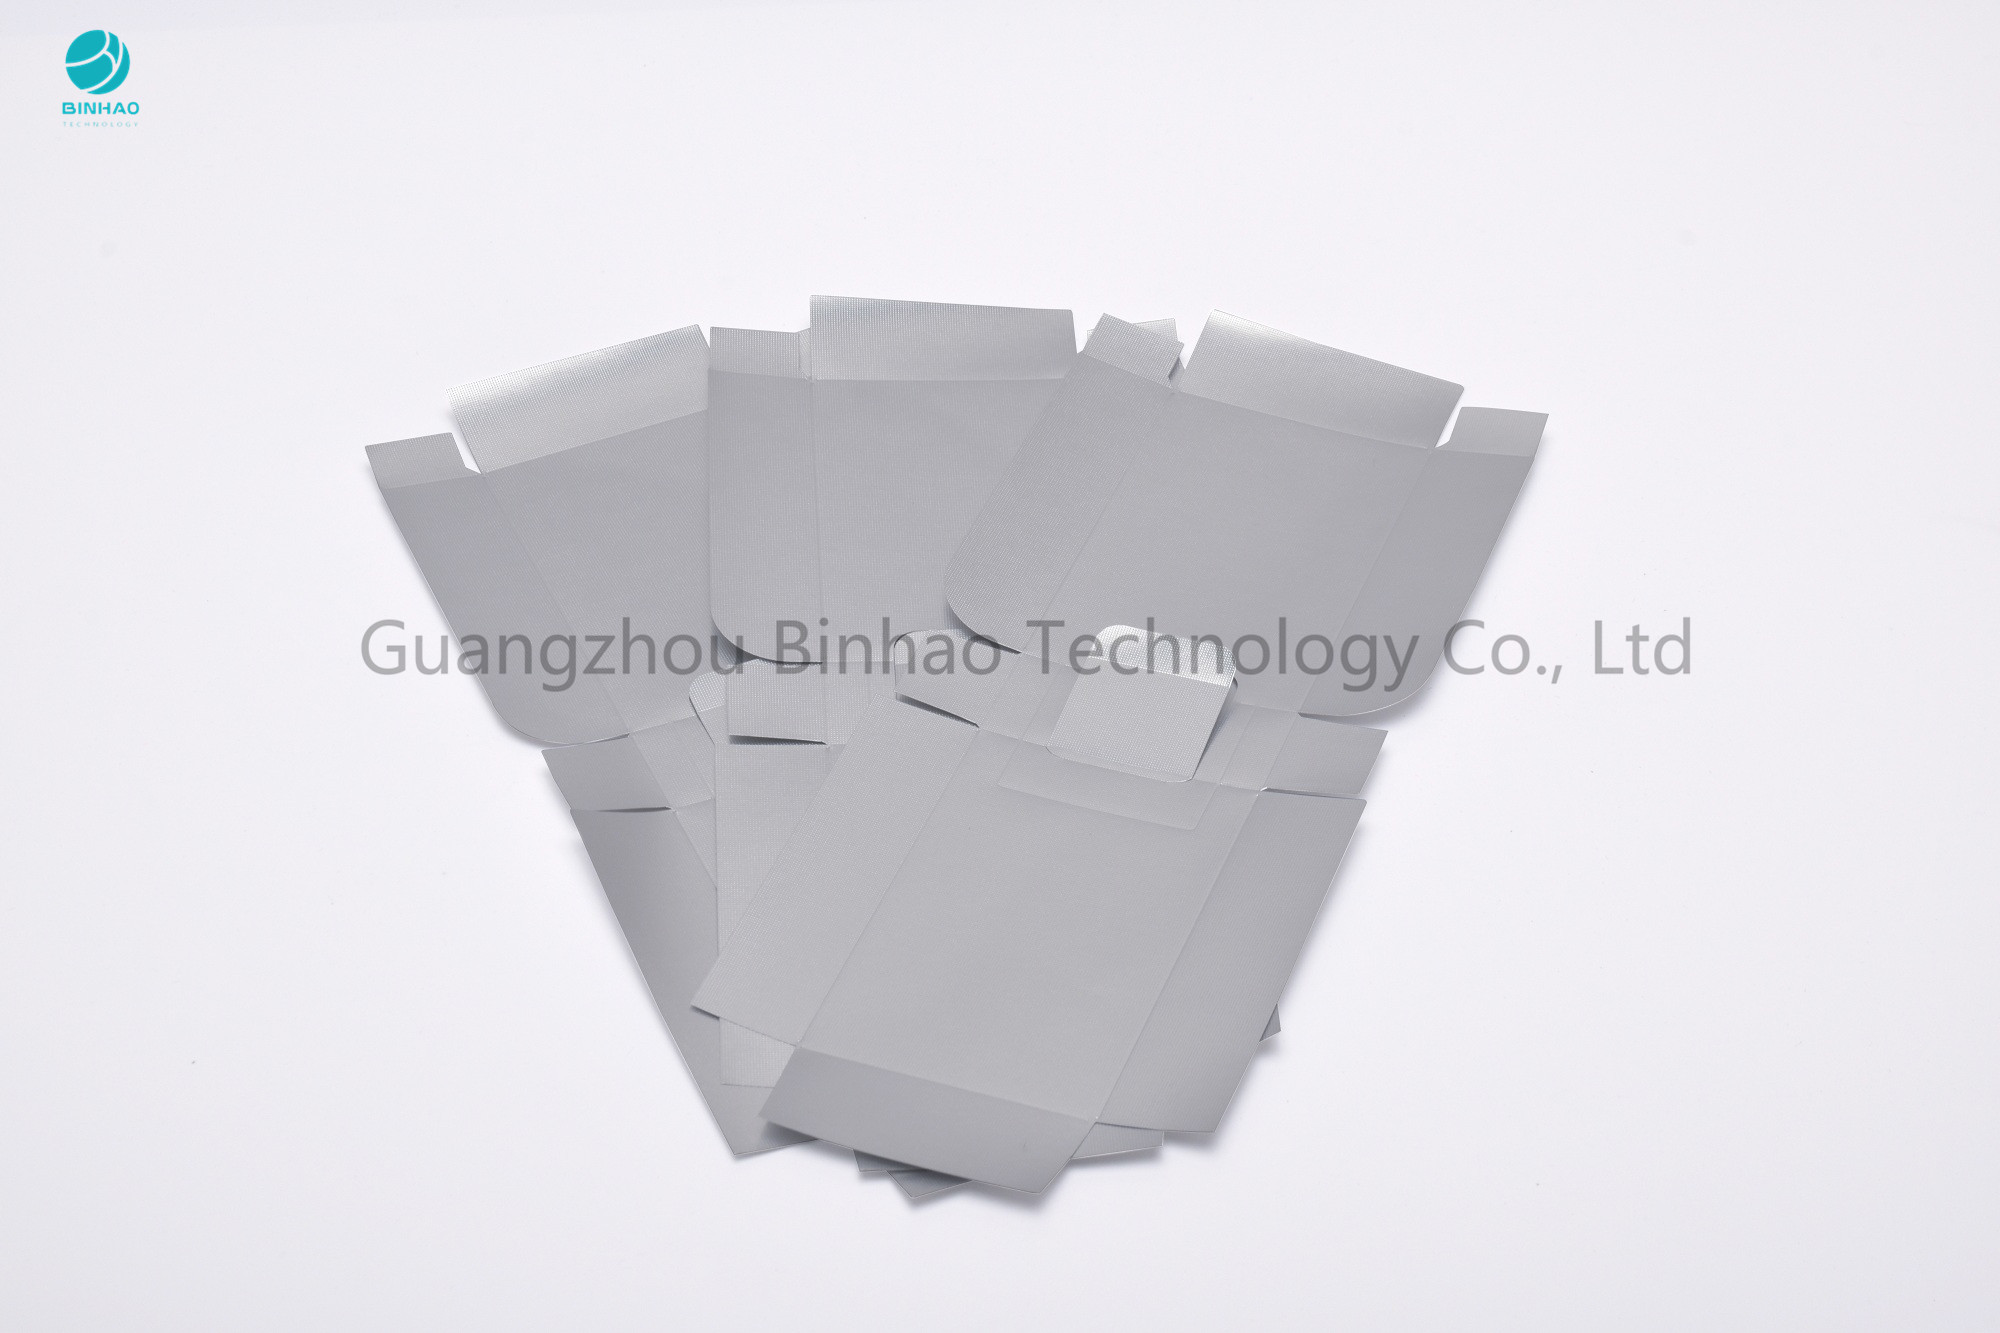 Imperméabilisez le papier argenté de papier aluminium de 42 microns avec le film d'ANIMAL FAMILIER pour l'emballage intérieur de cigarette